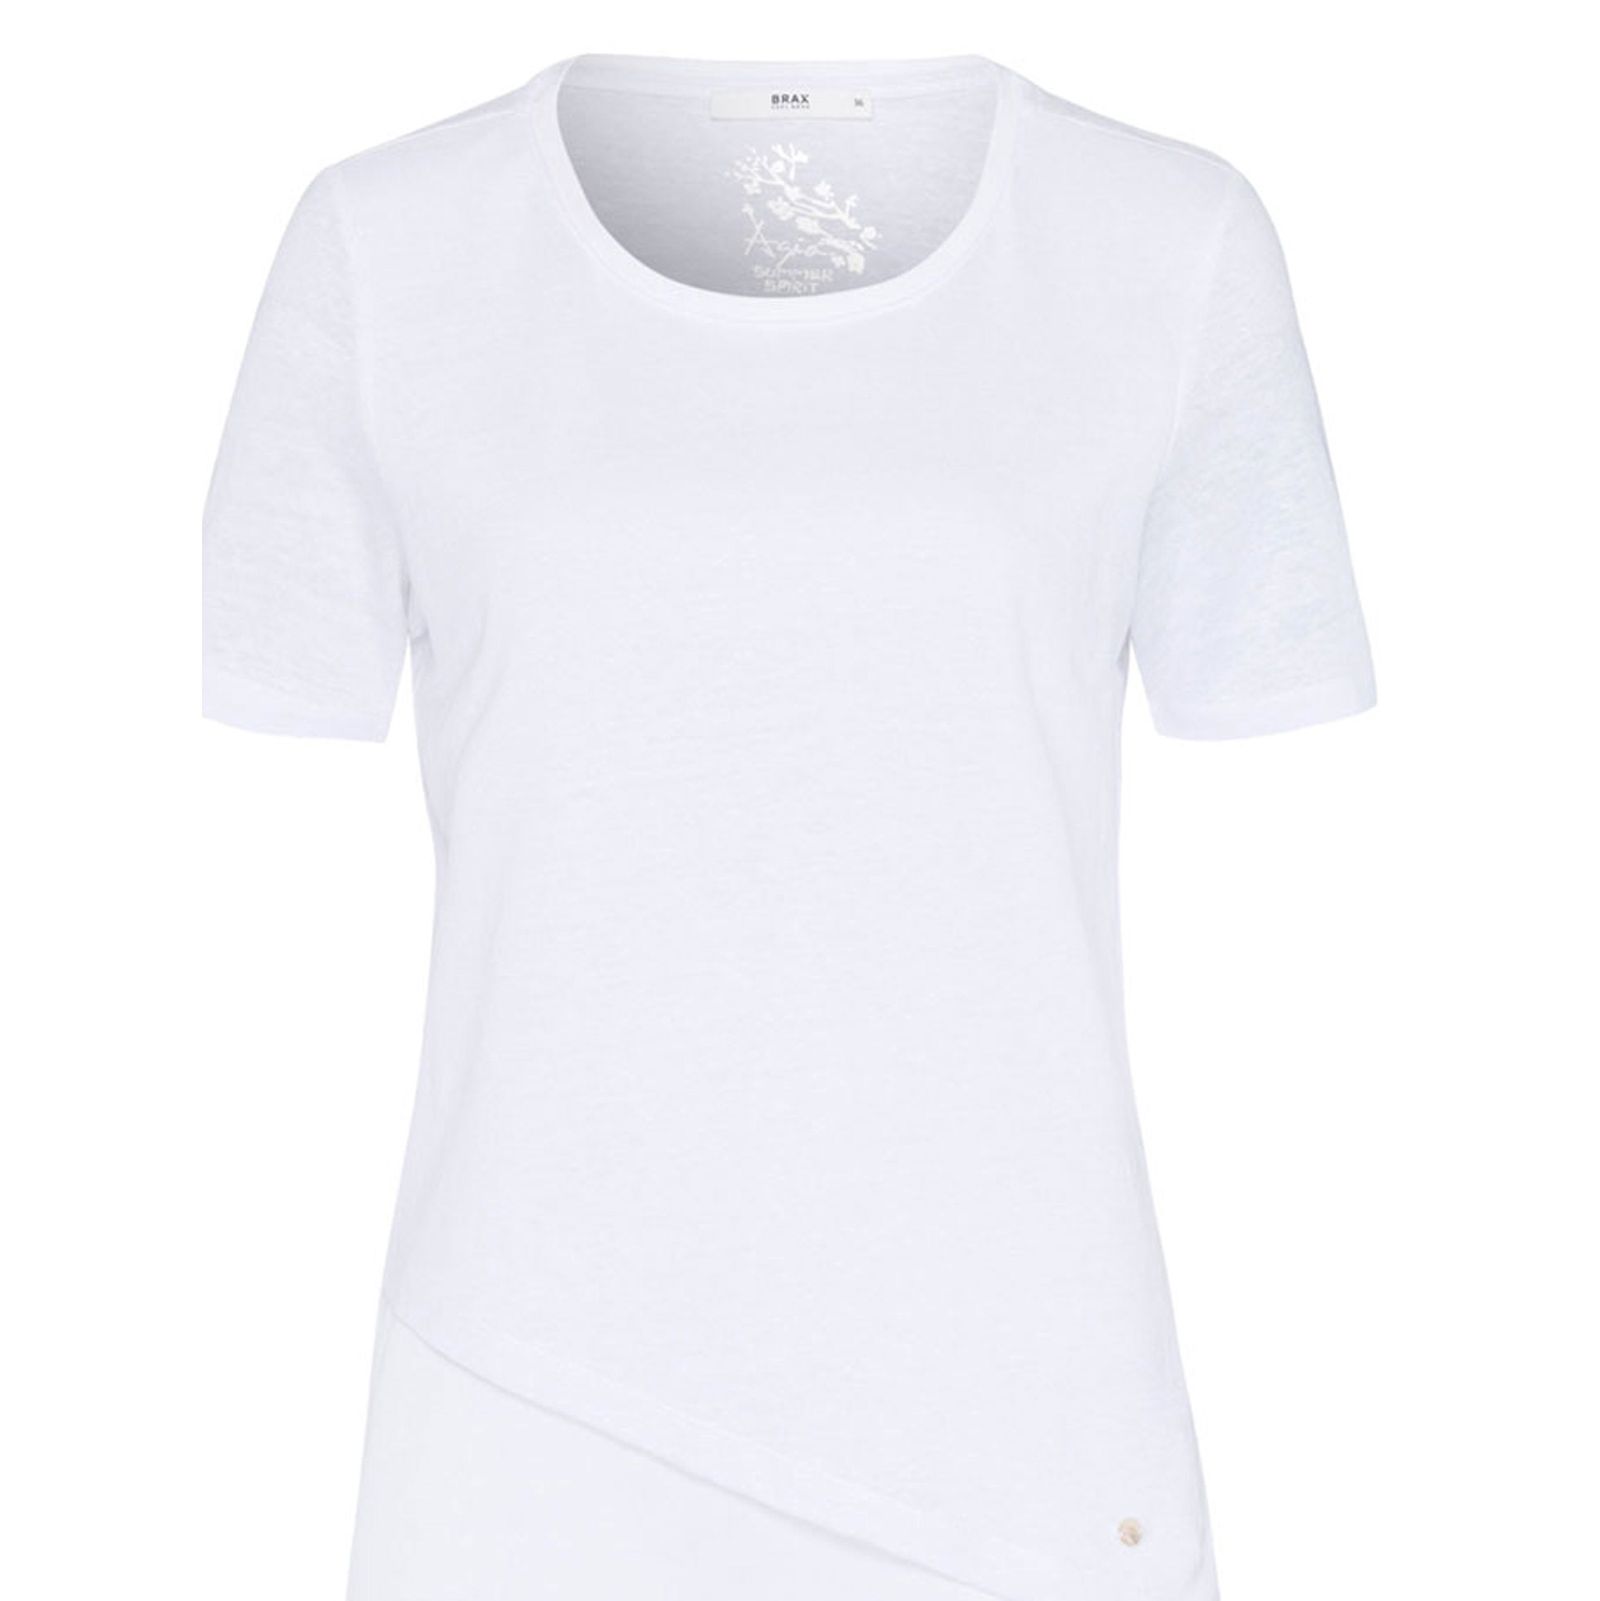 تی شرت یقه گرد زنانه CORA - برکس - سفيد - 1